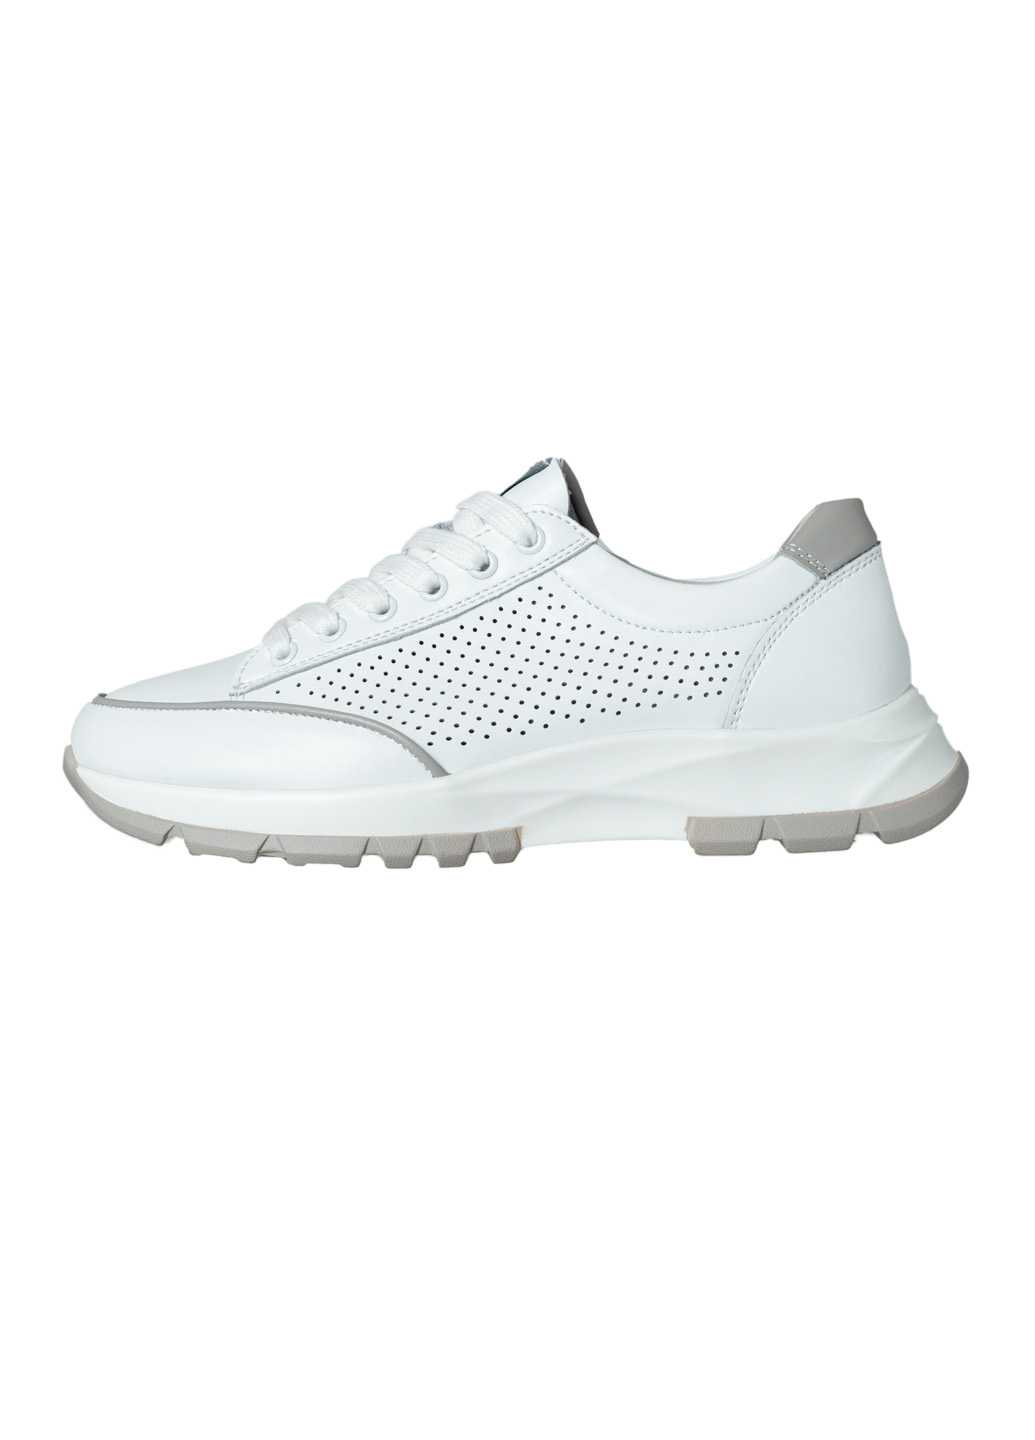 Жіночі кросівки Lifexpert біло-сірого кольору з перфорацією